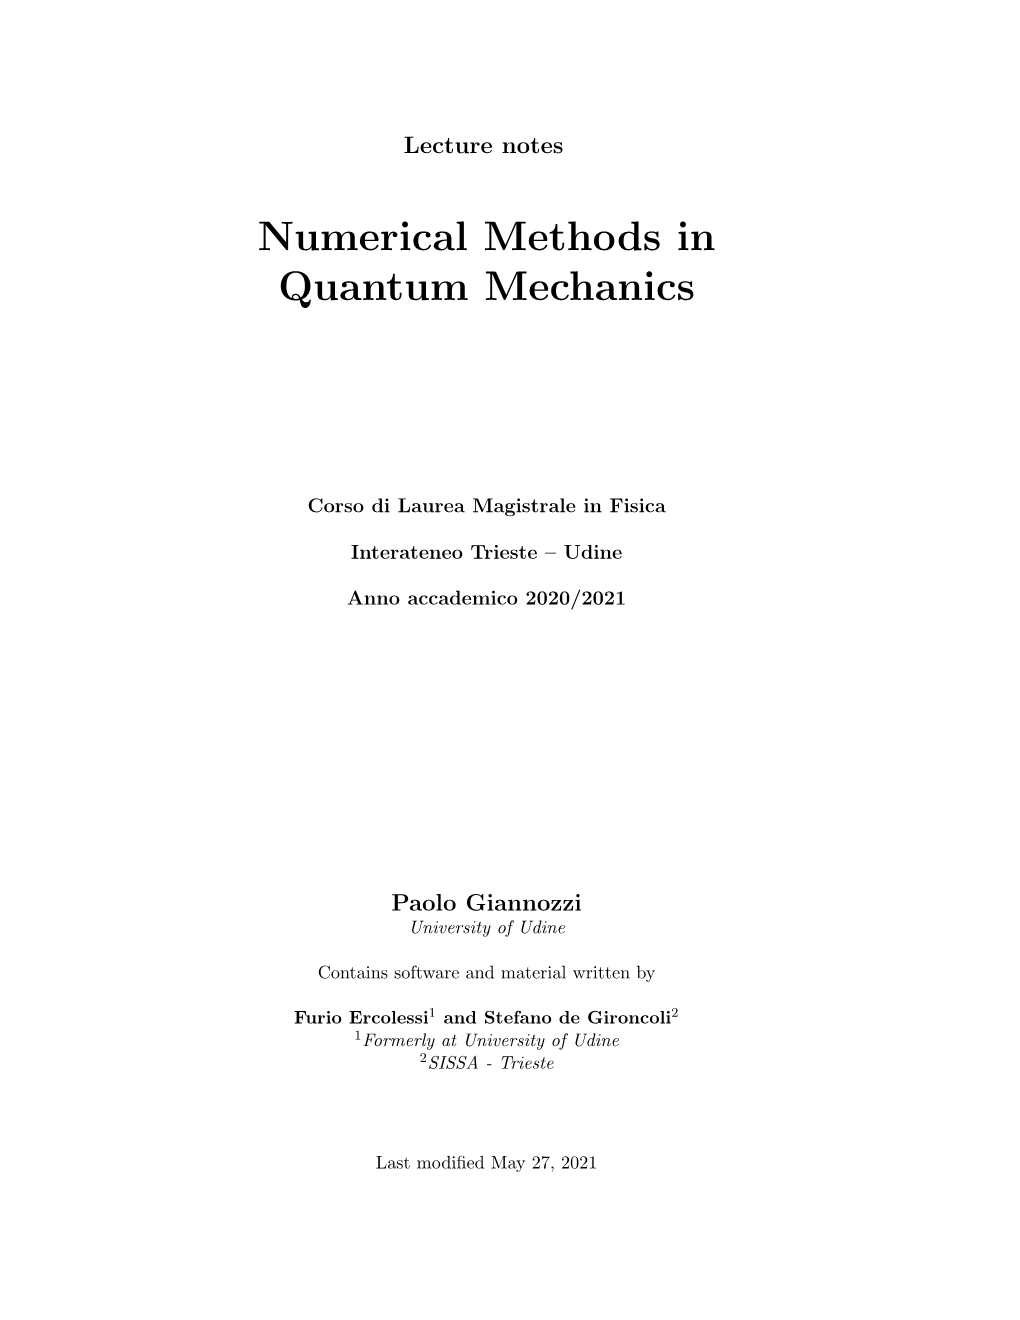 Numerical Methods in Quantum Mechanics